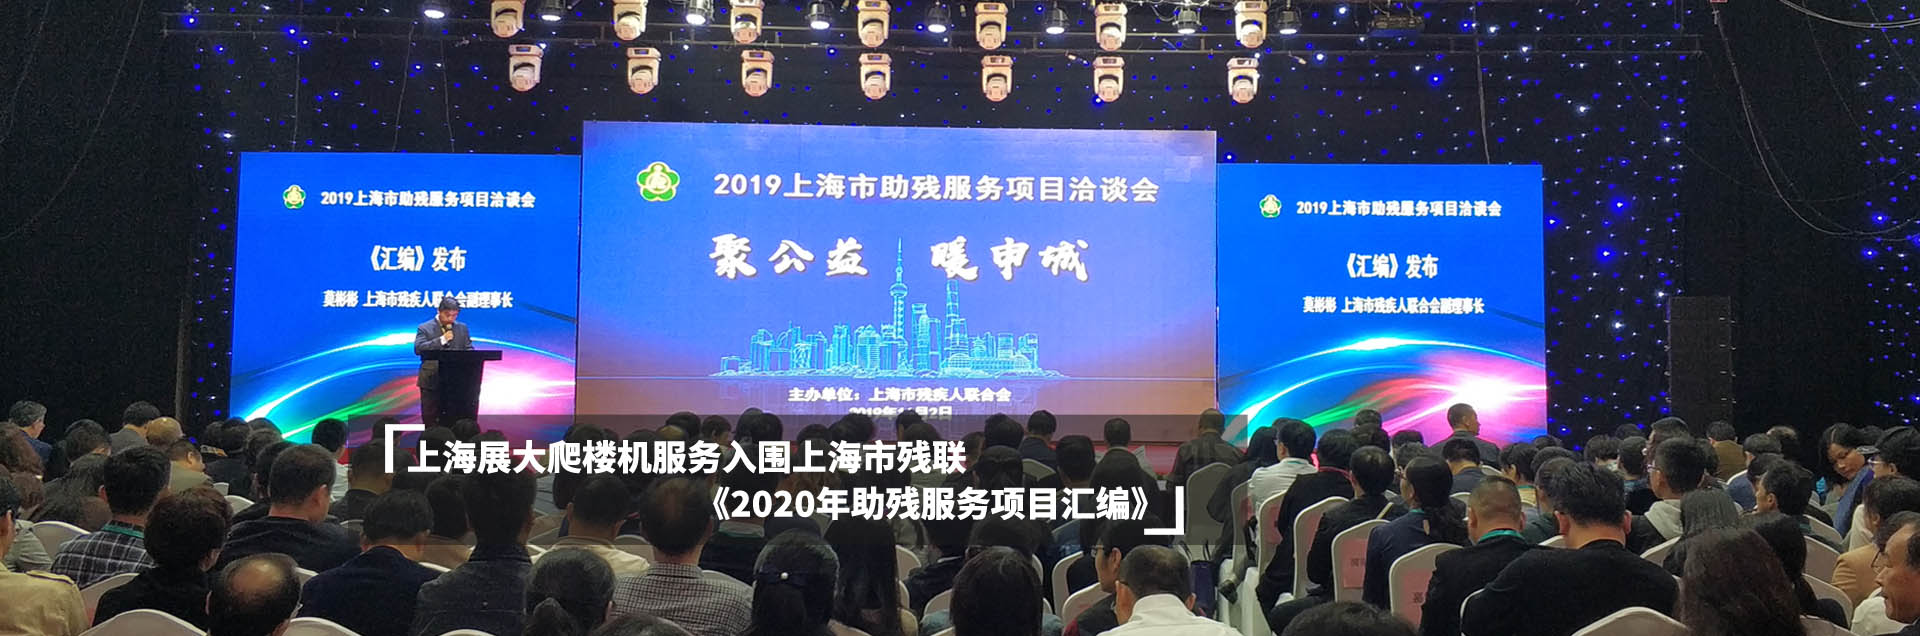 上海展大爬楼机服务入围上海市残联《2020年助残服务项目汇编》